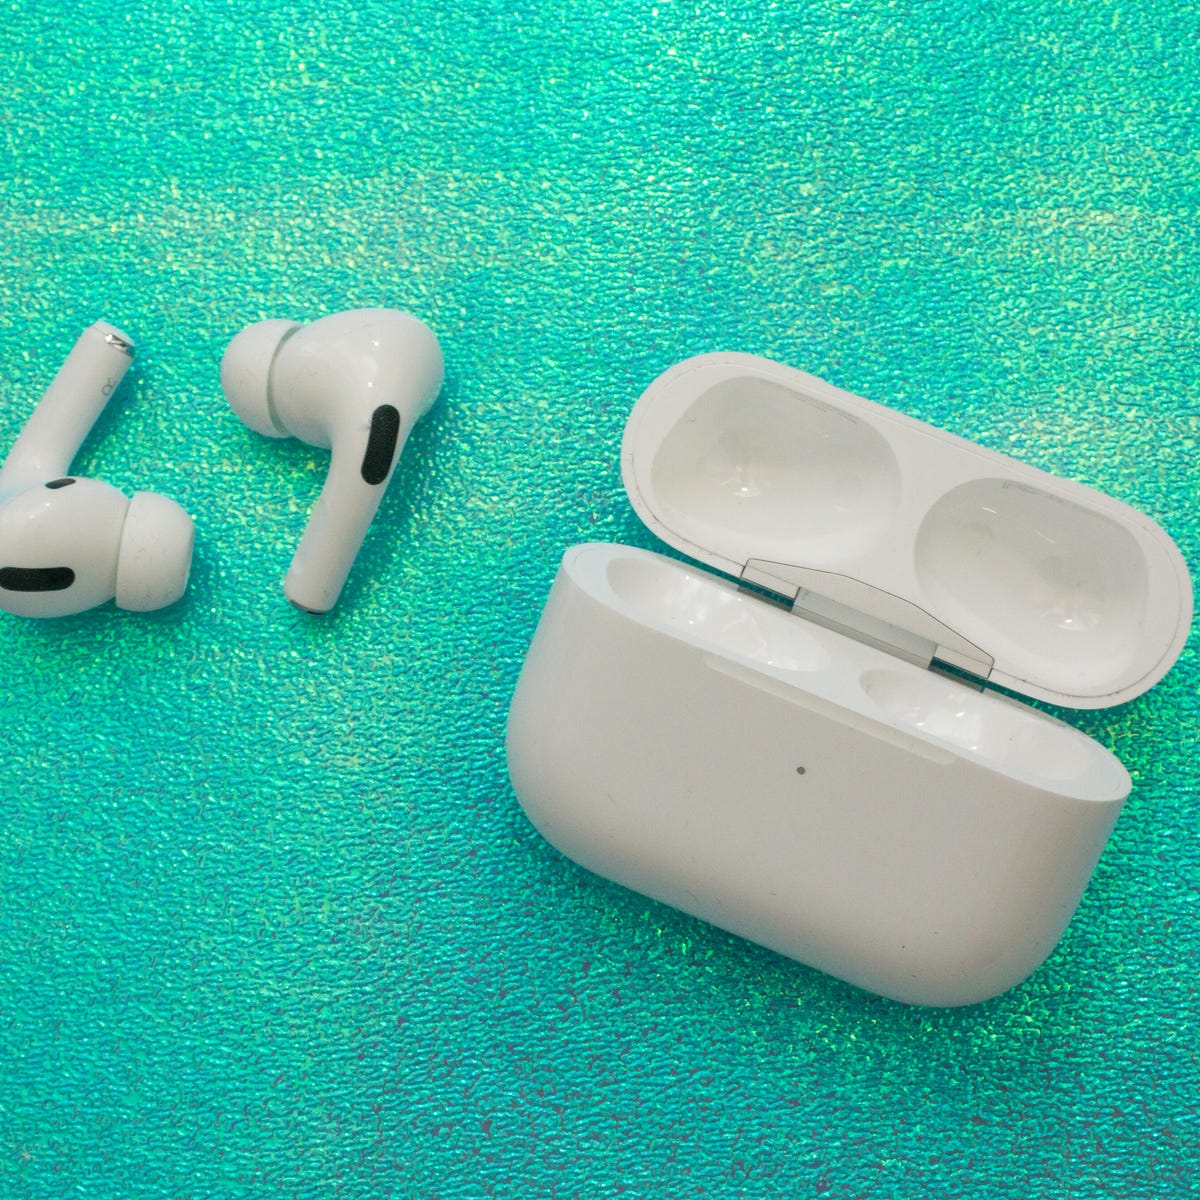 byld ujævnheder Jonglere AirPods Pro review: These headphones still rock - CNET